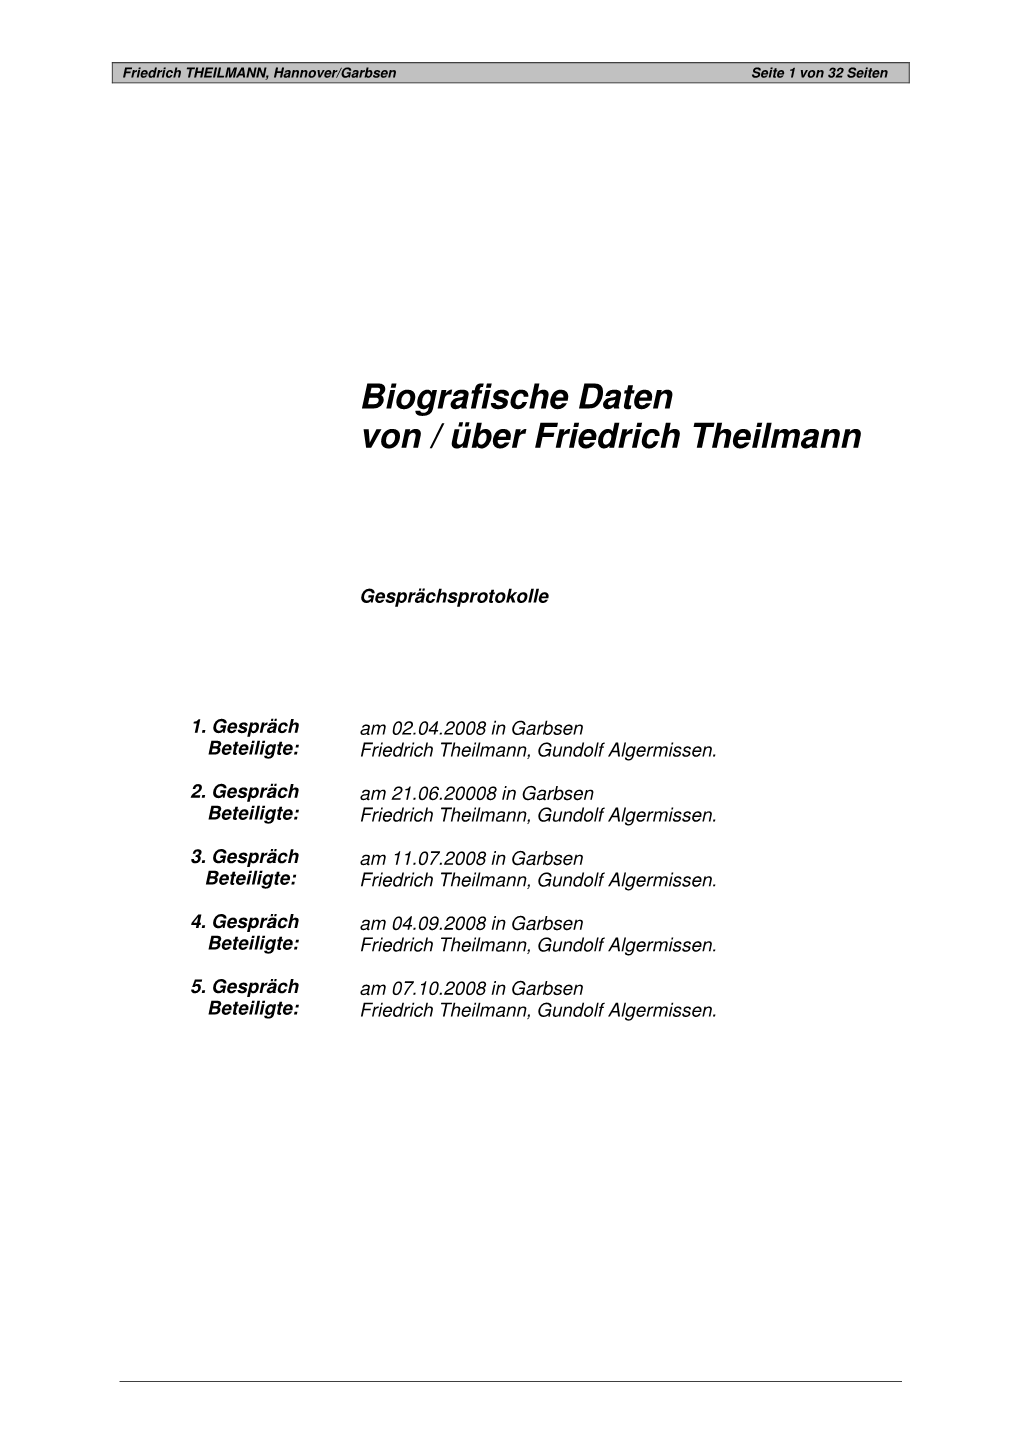 Biografische Daten Von / Über Friedrich Theilmann